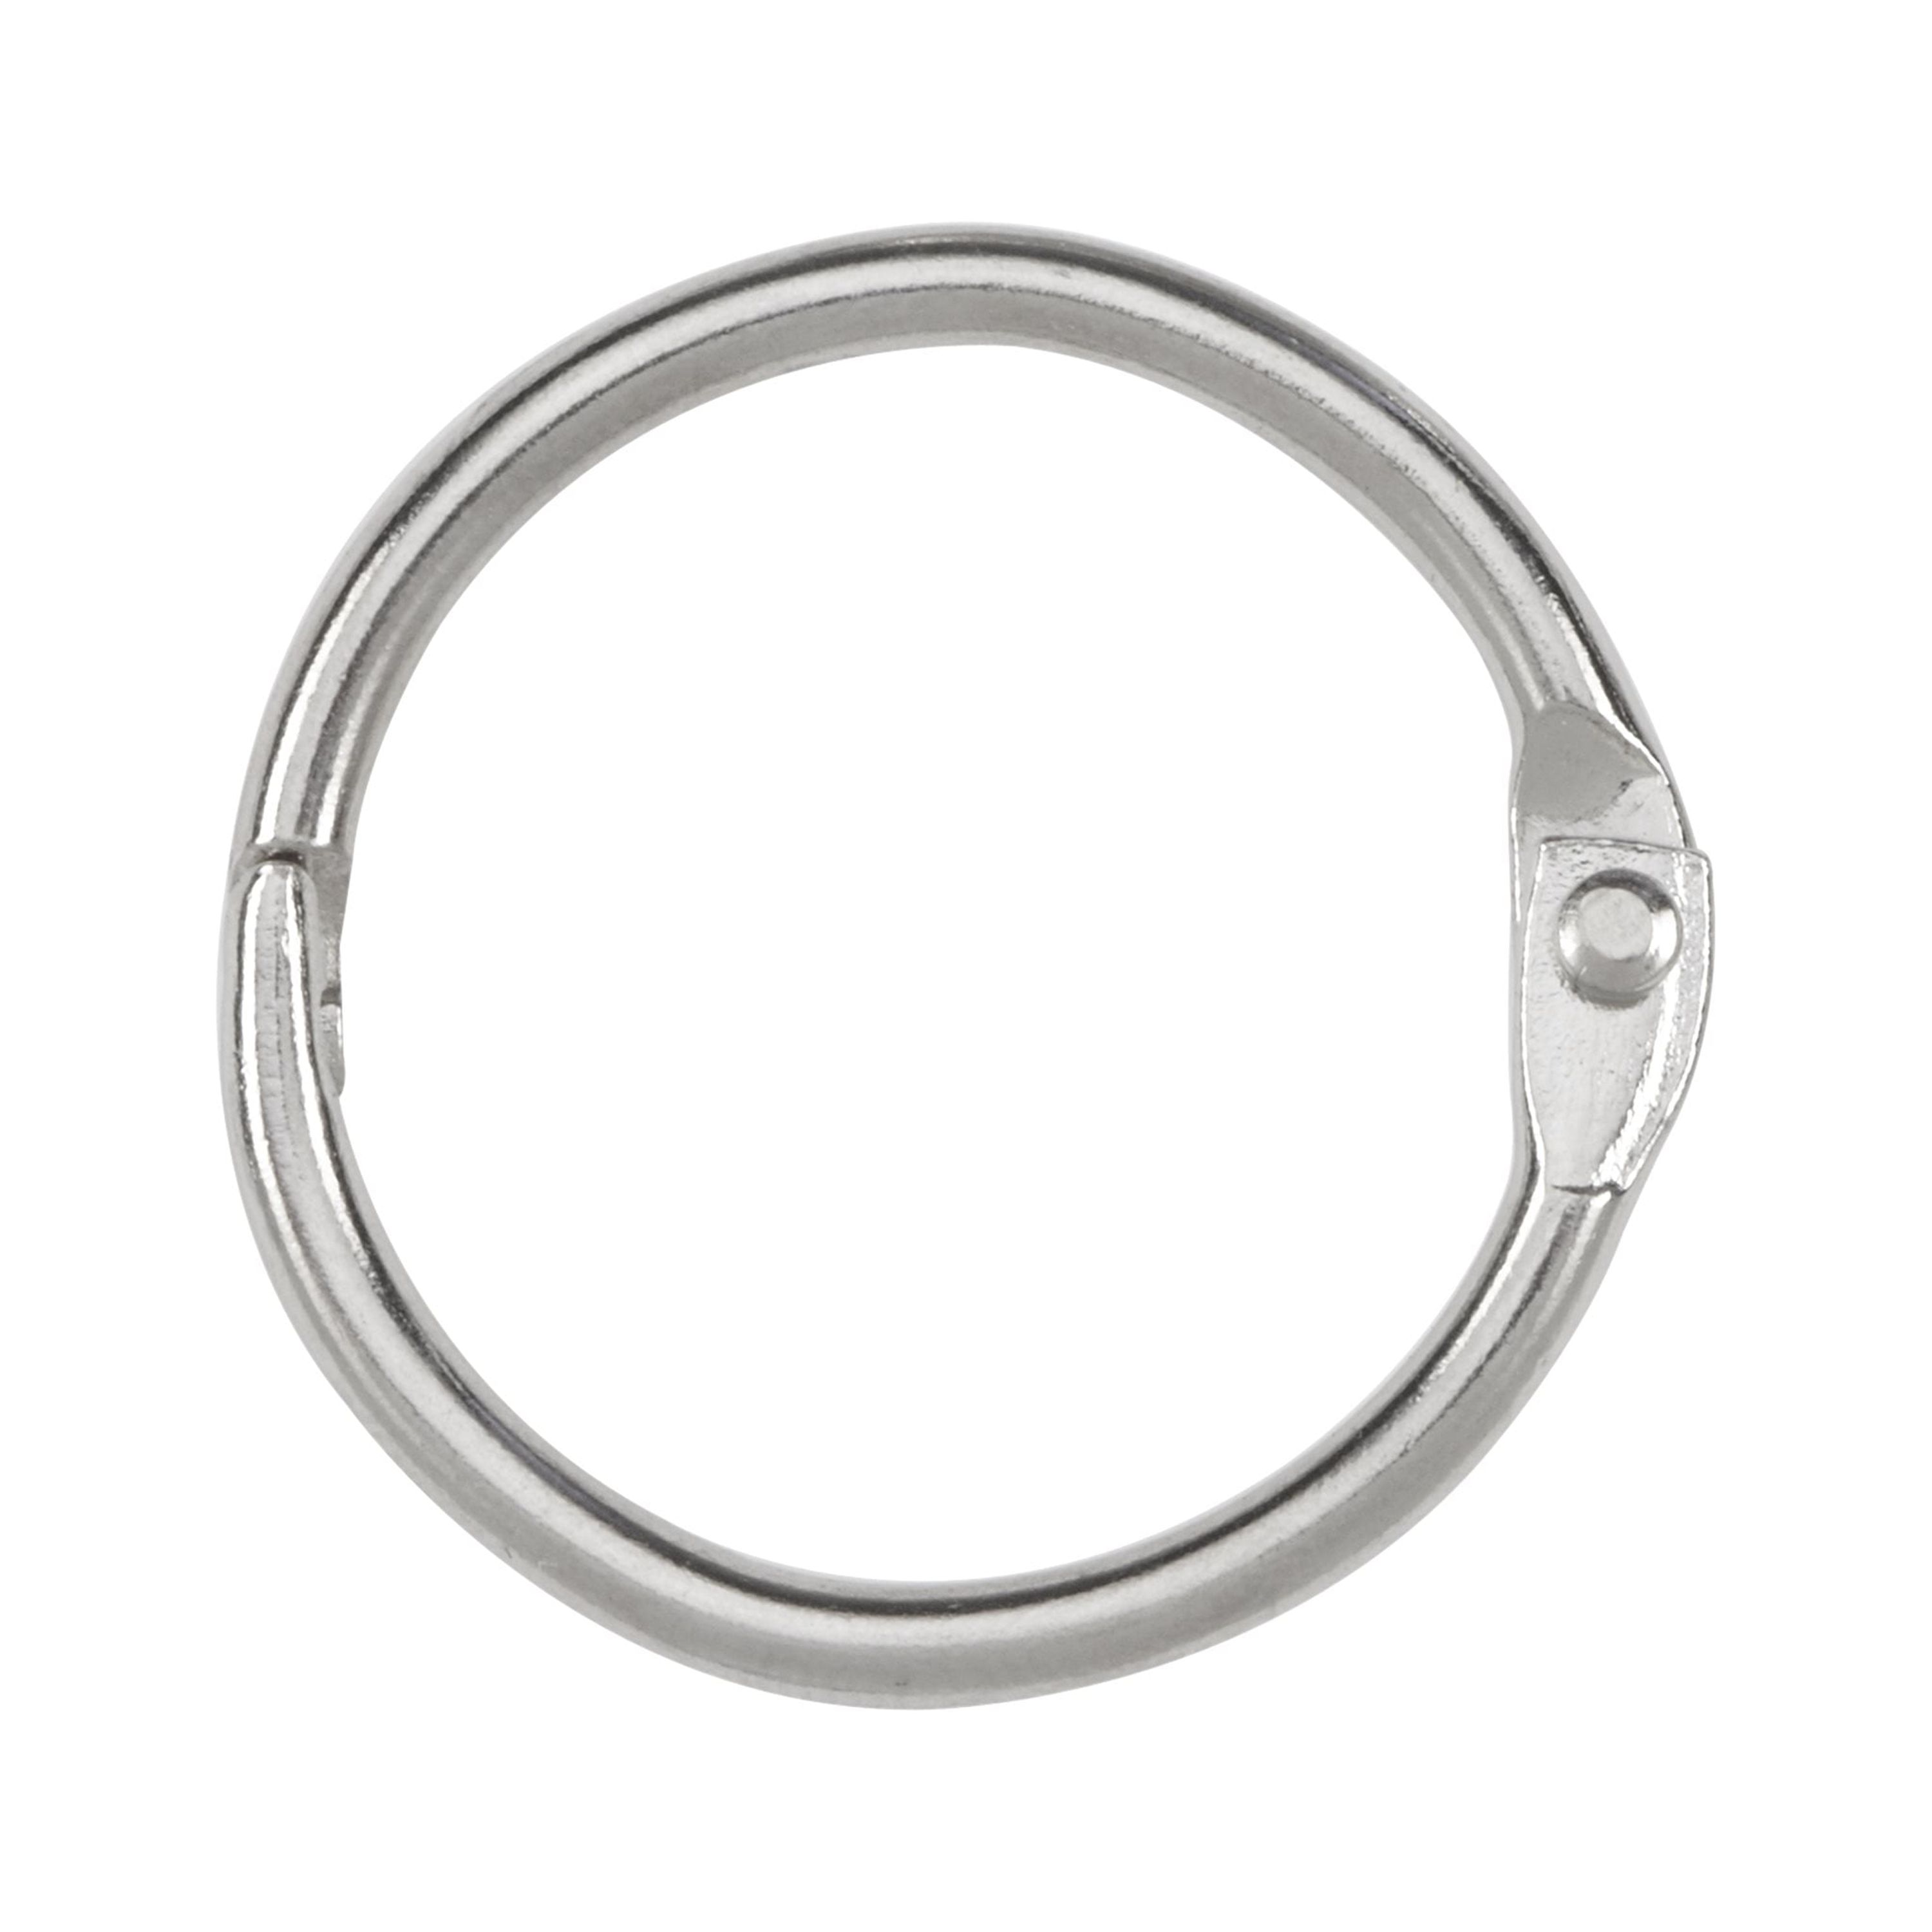 Acco 72202 1.00" Diameter Metal Book Ring - image 1 of 4